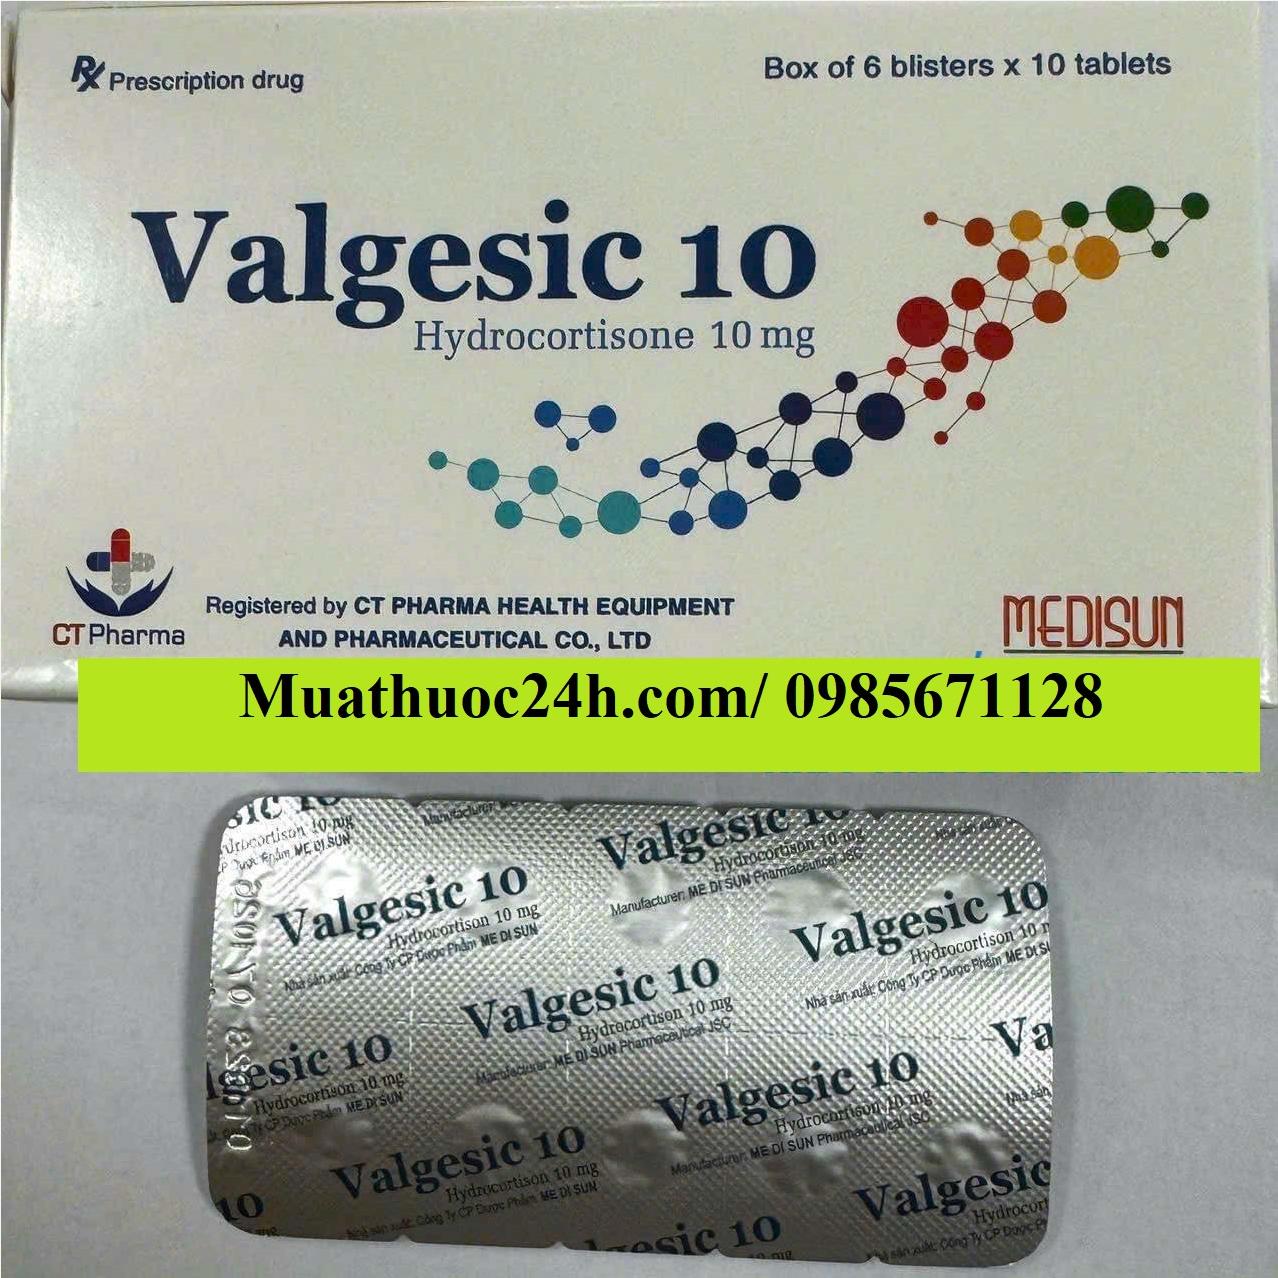 Thuốc Valgesic 10mg Hydrocortison giá bao nhiêu mua ở đâu?